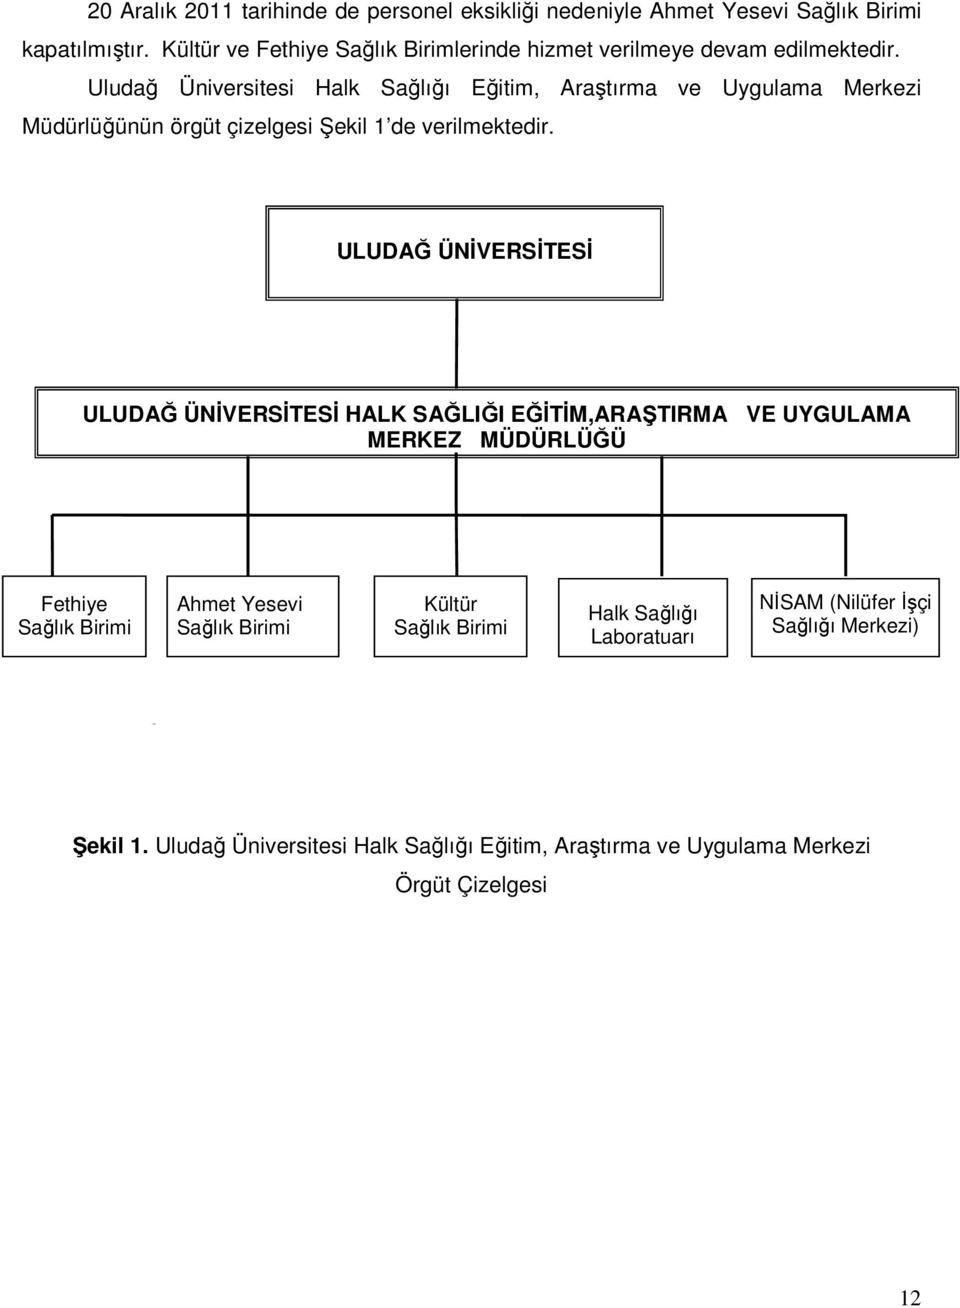 Uludağ Üniversitesi Halk Sağlığı Eğitim, Araştırma ve Uygulama Merkezi Müdürlüğünün örgüt çizelgesi Şekil 1 de verilmektedir.